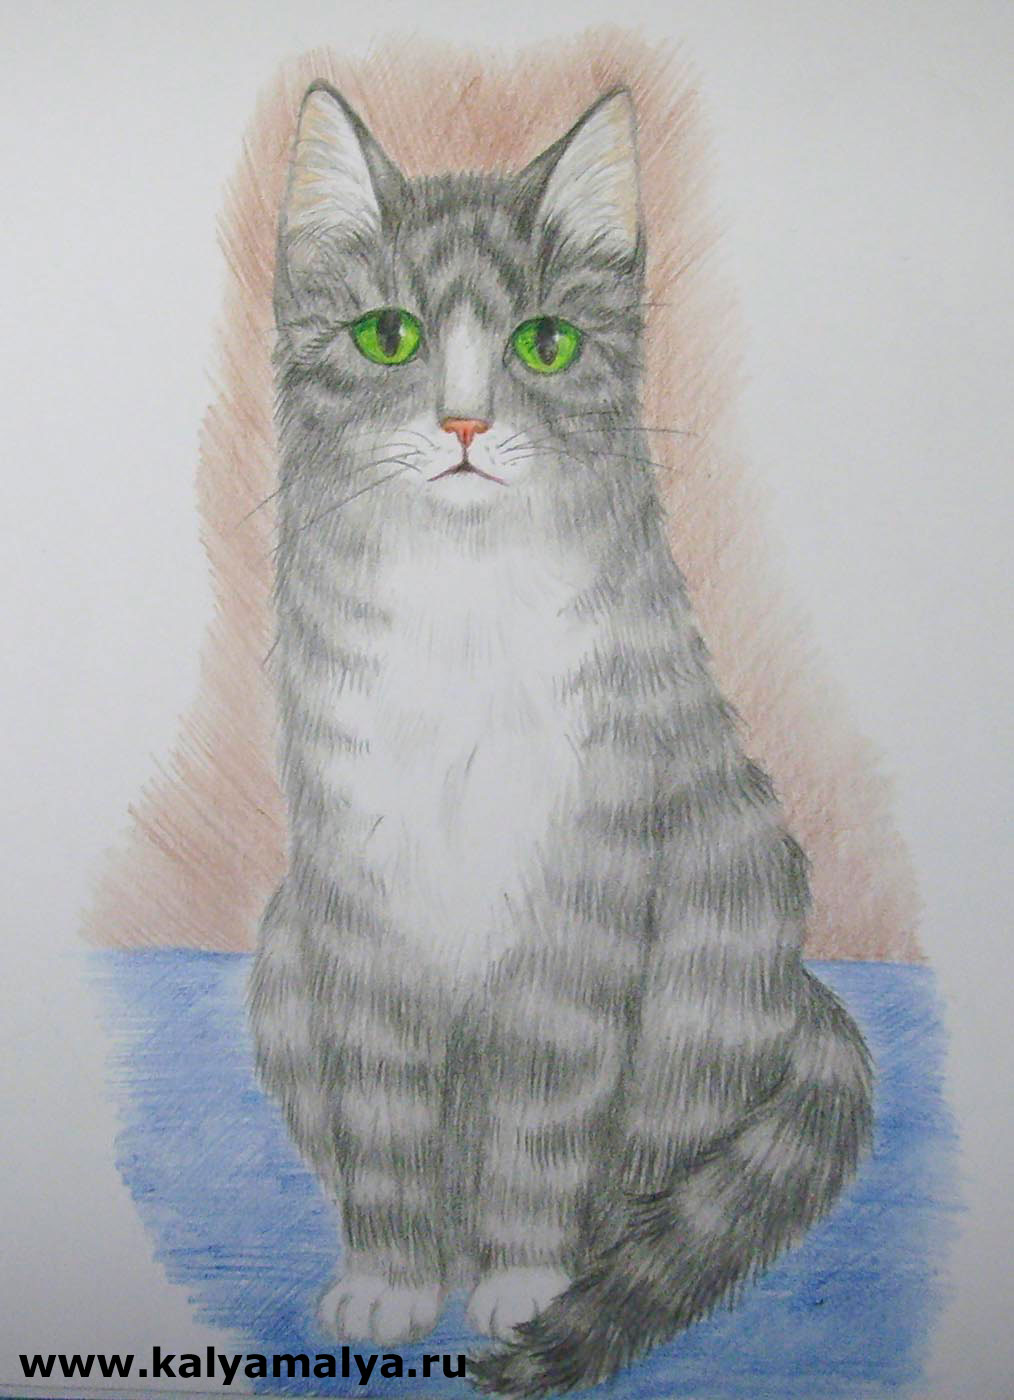 Каля Маля Всё о рисунках. Учимся рисовать: Как нарисовать кошку?